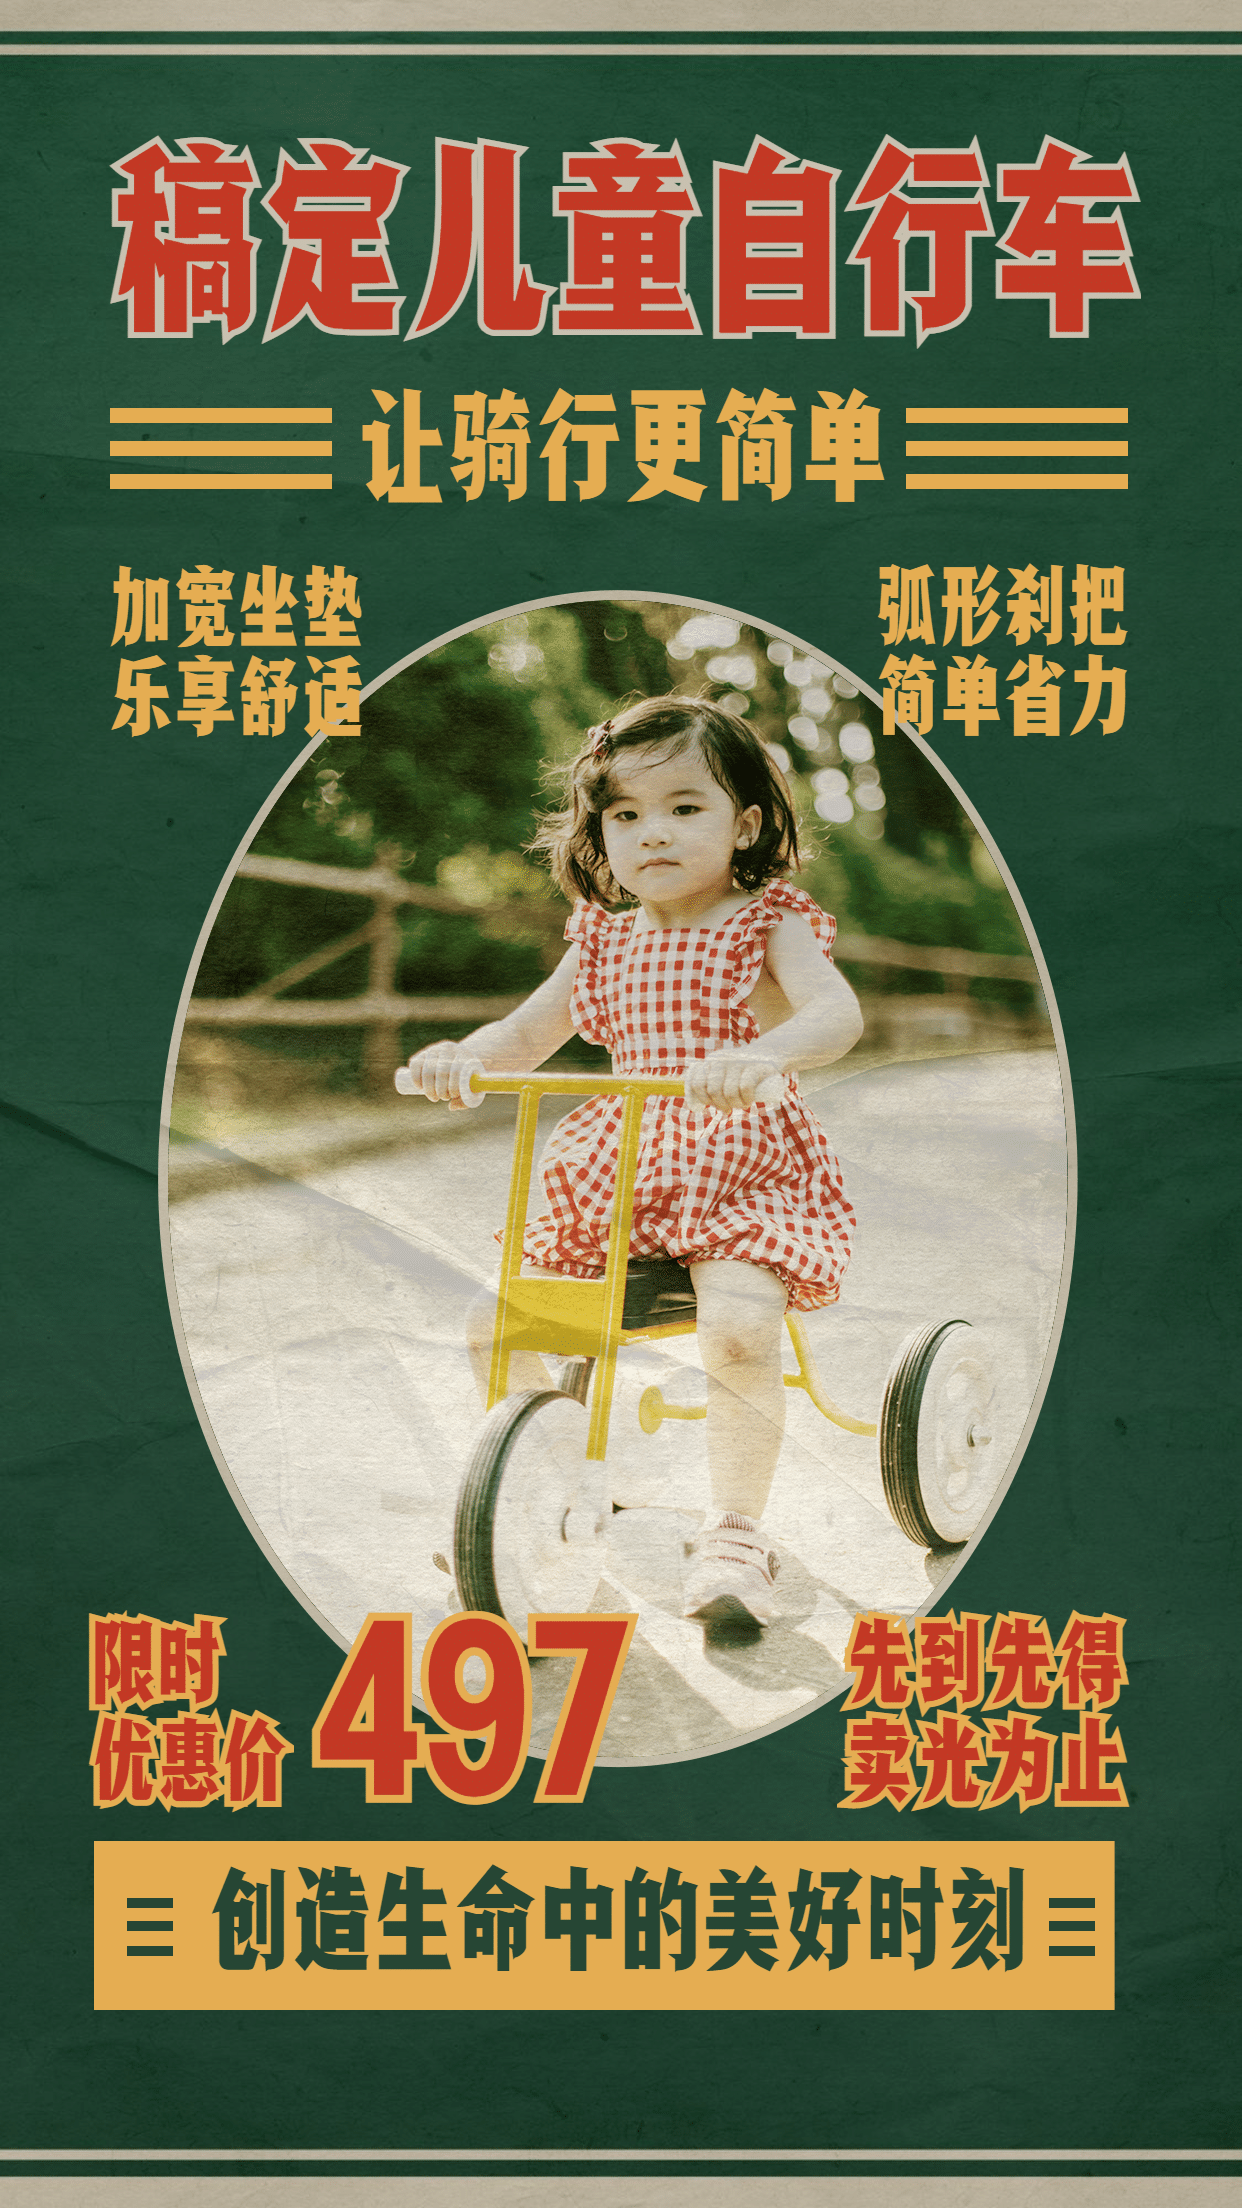 产品展示儿童自行车复古风预览效果